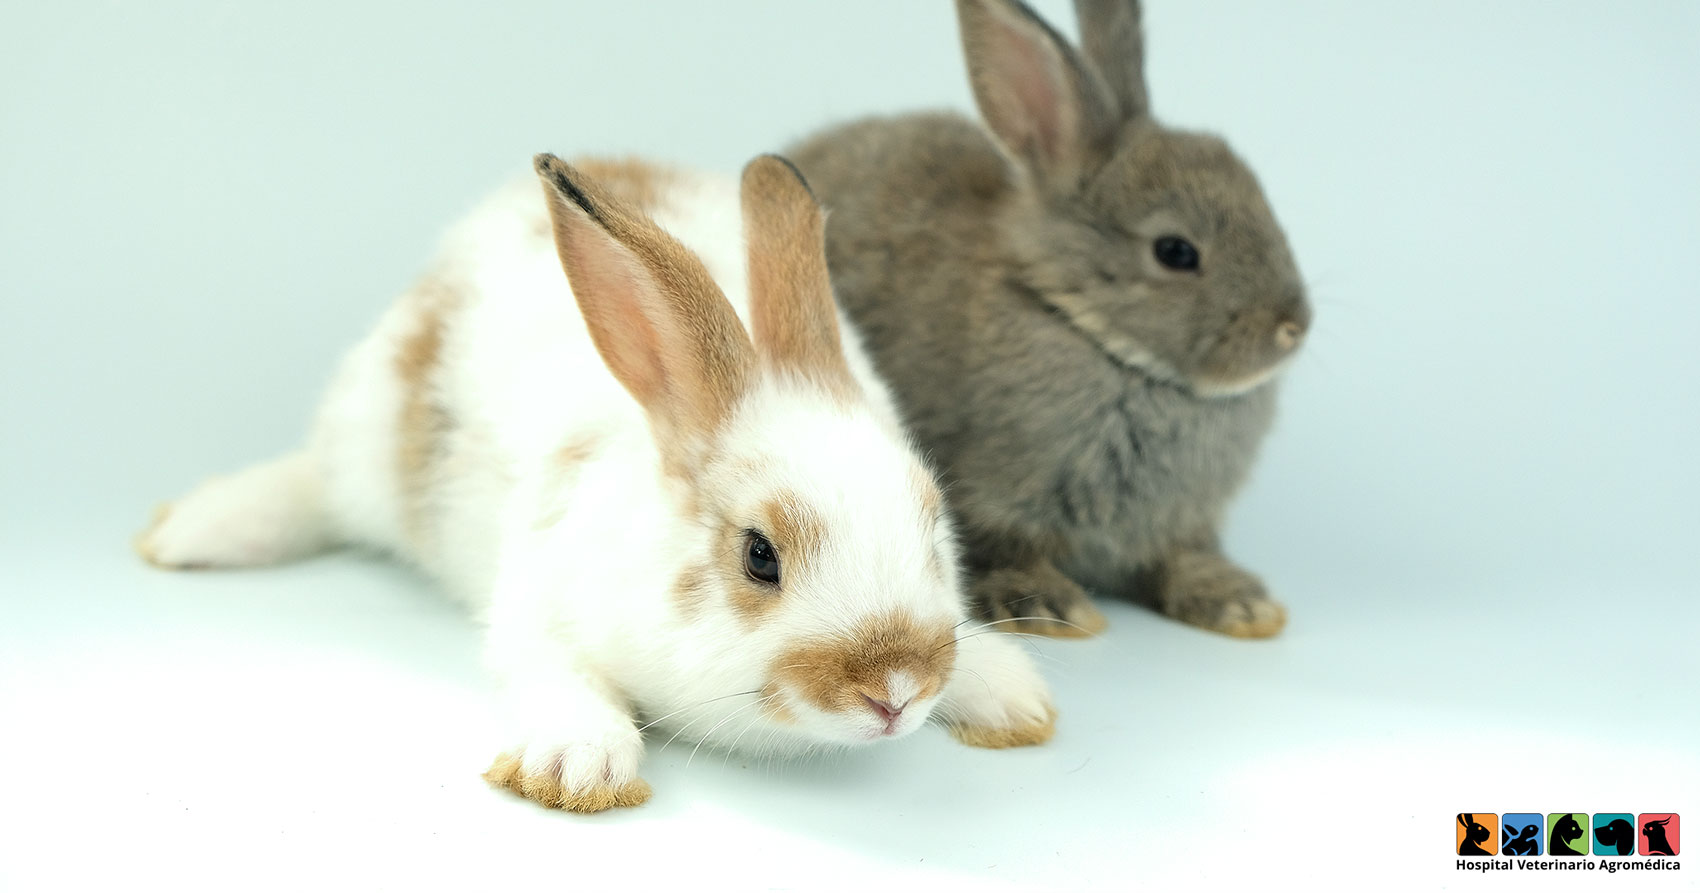 Cuánto crecen los conejos? - Hospital Veterinario Agromédica